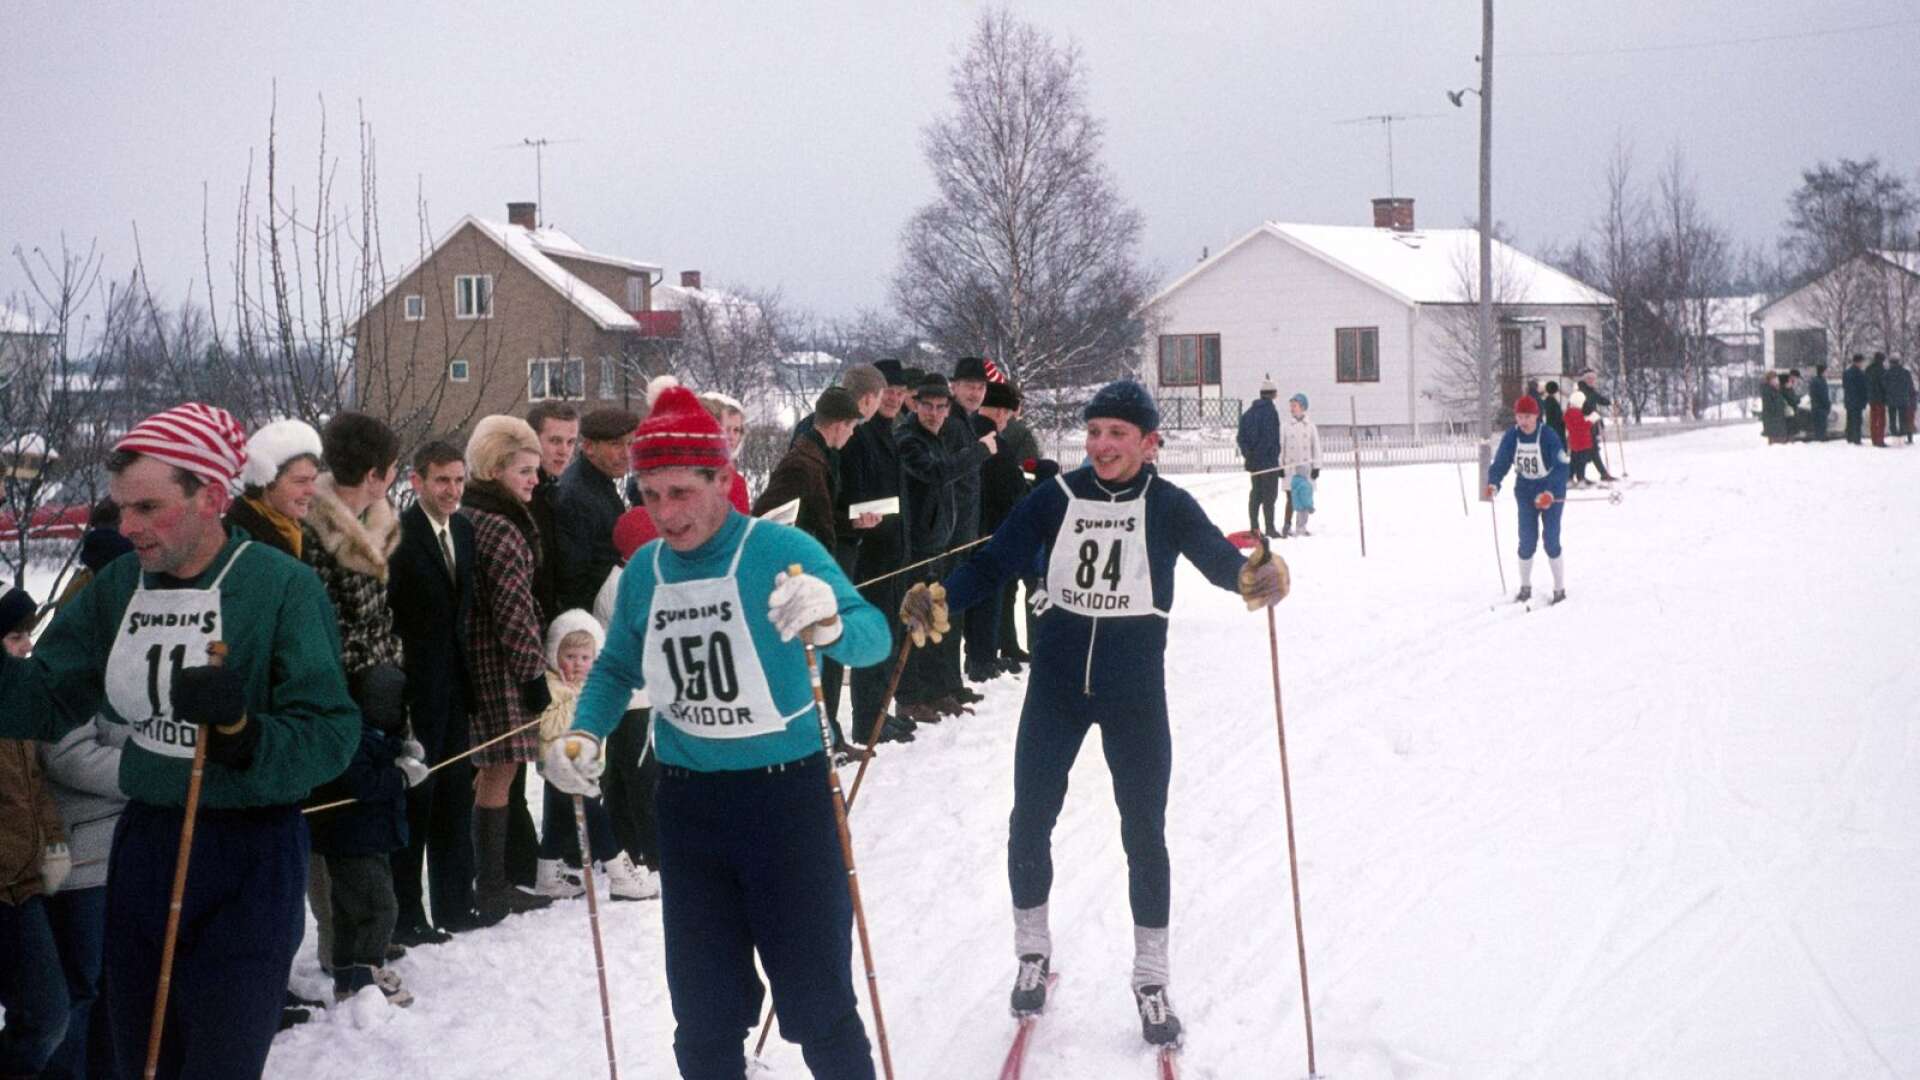 Finntöreloppet passerar Älgarås år 1969, vi ser bland annat Sune Johansson (84) skida på.